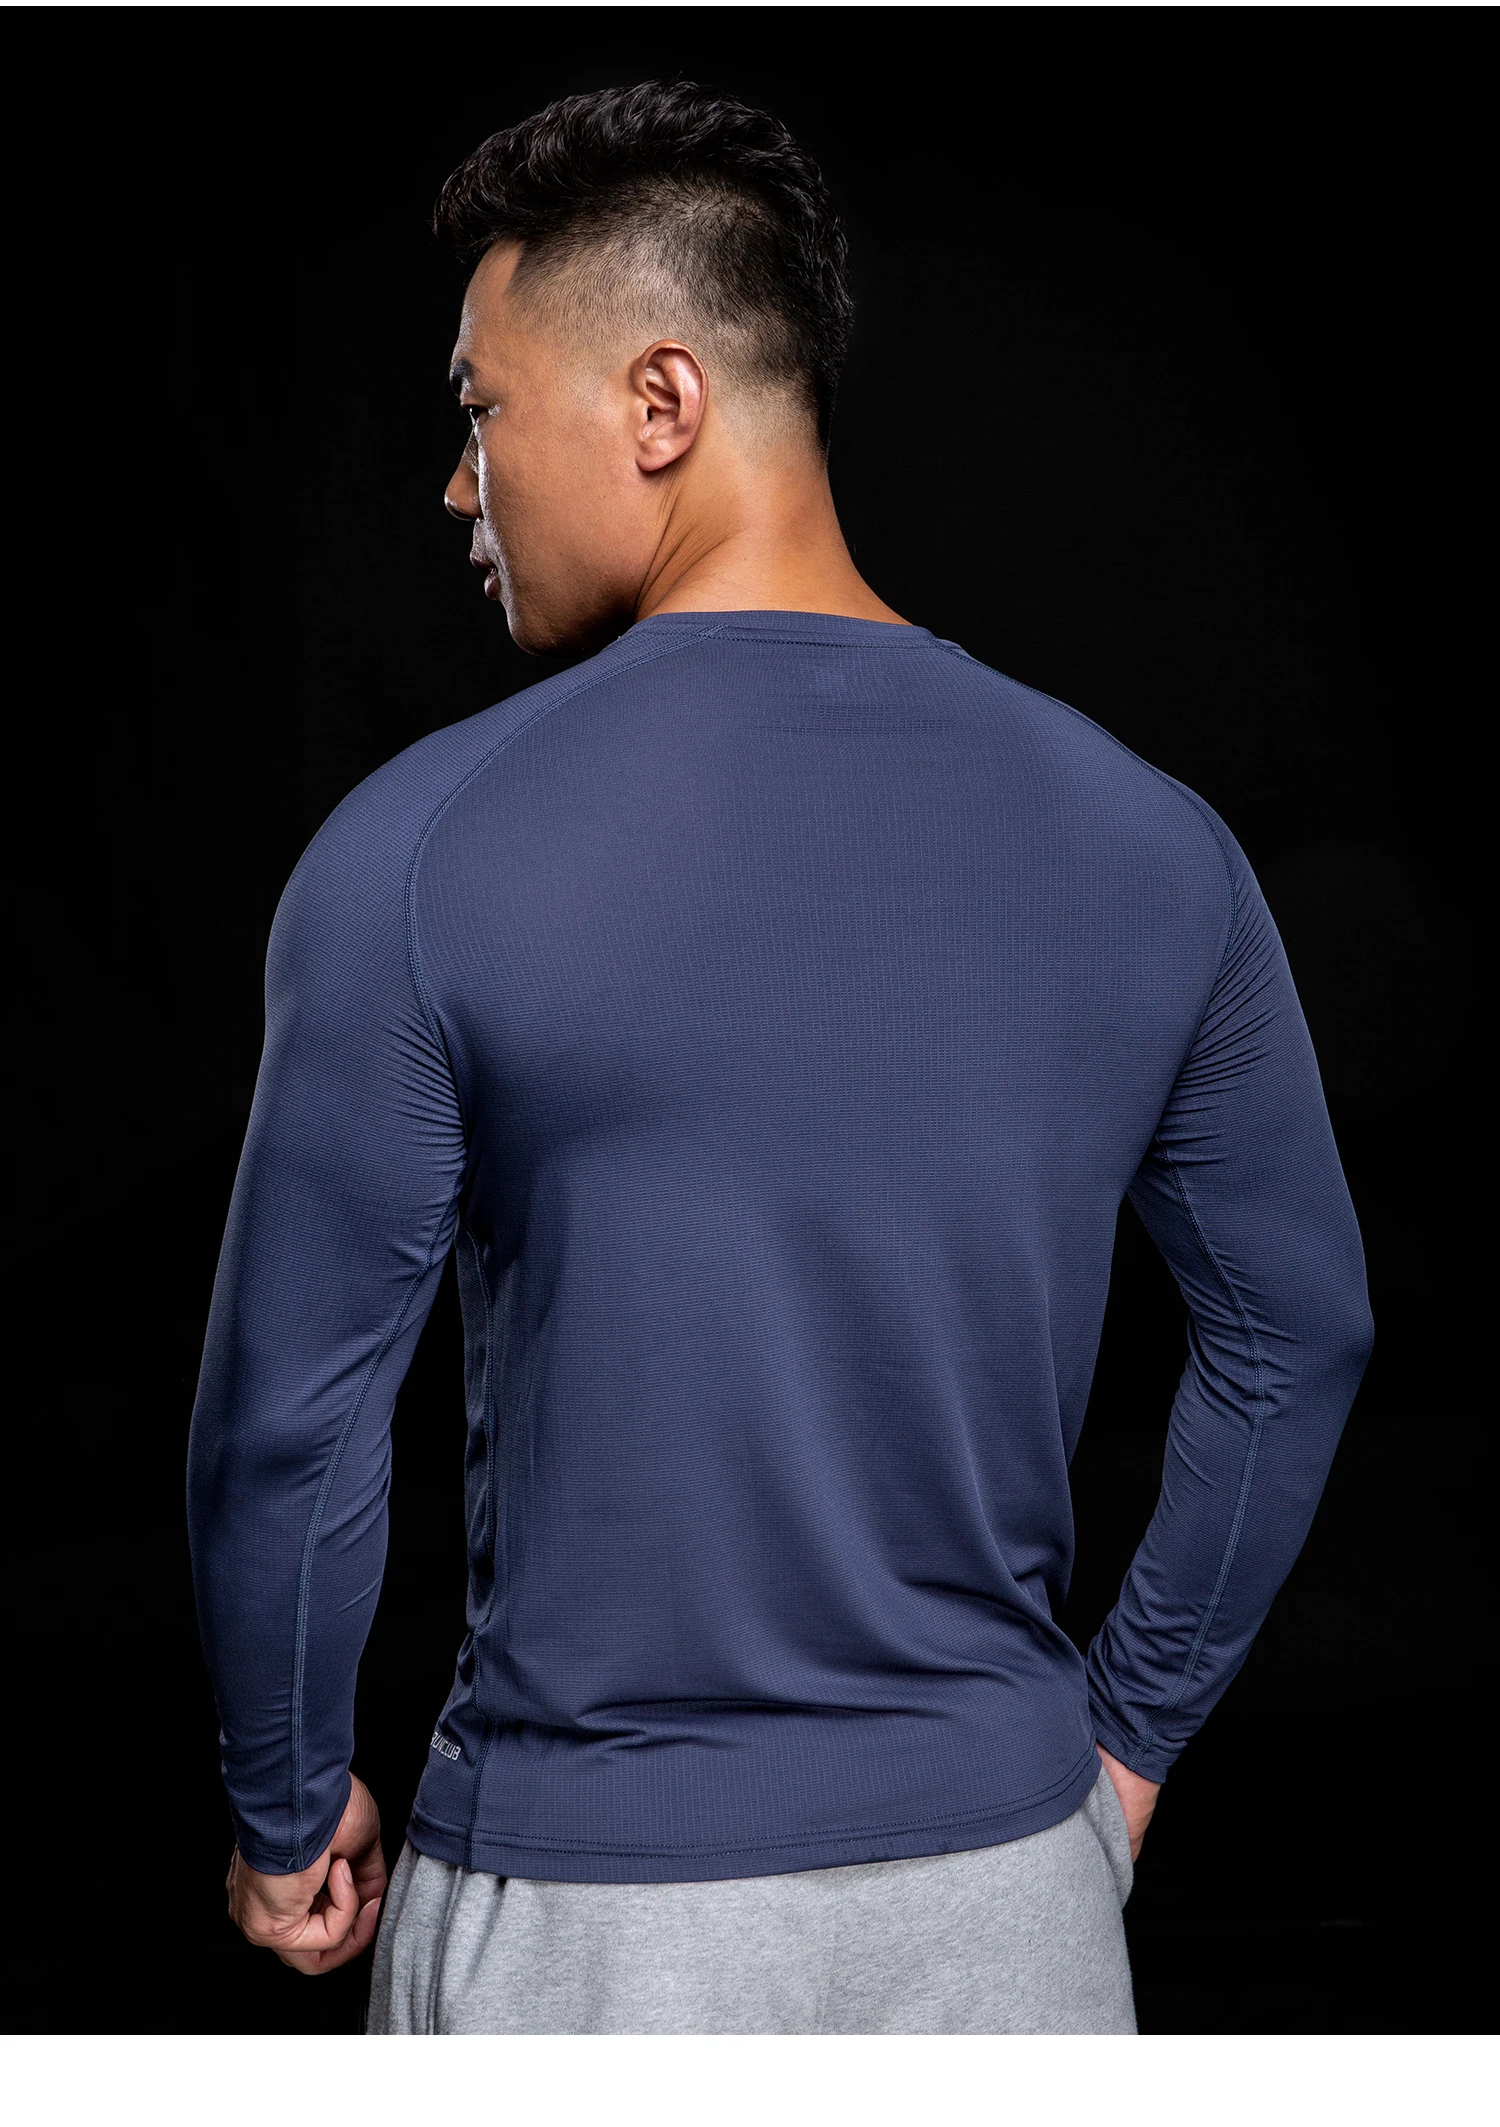 Рубашка IМNIKEС для бега мужская рубашка с длинным рукавом спортзала спортивная